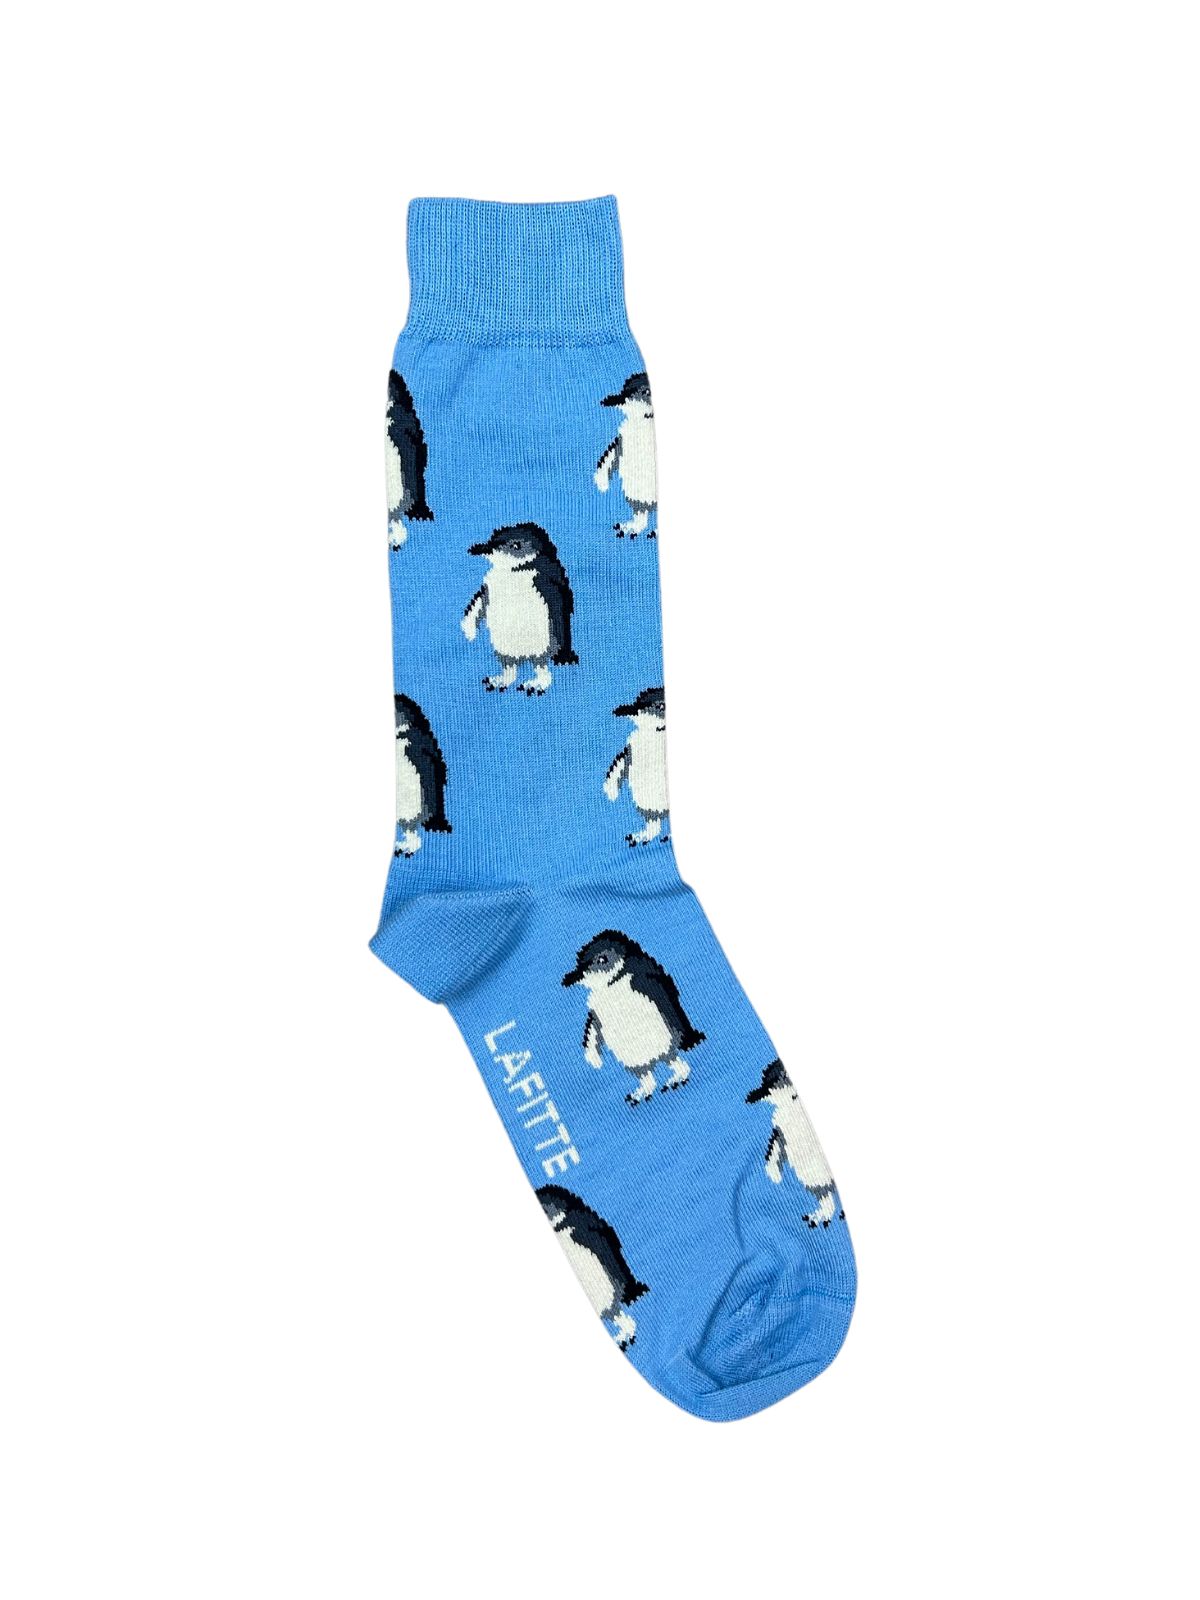 Blue Penguin Unisex Socks